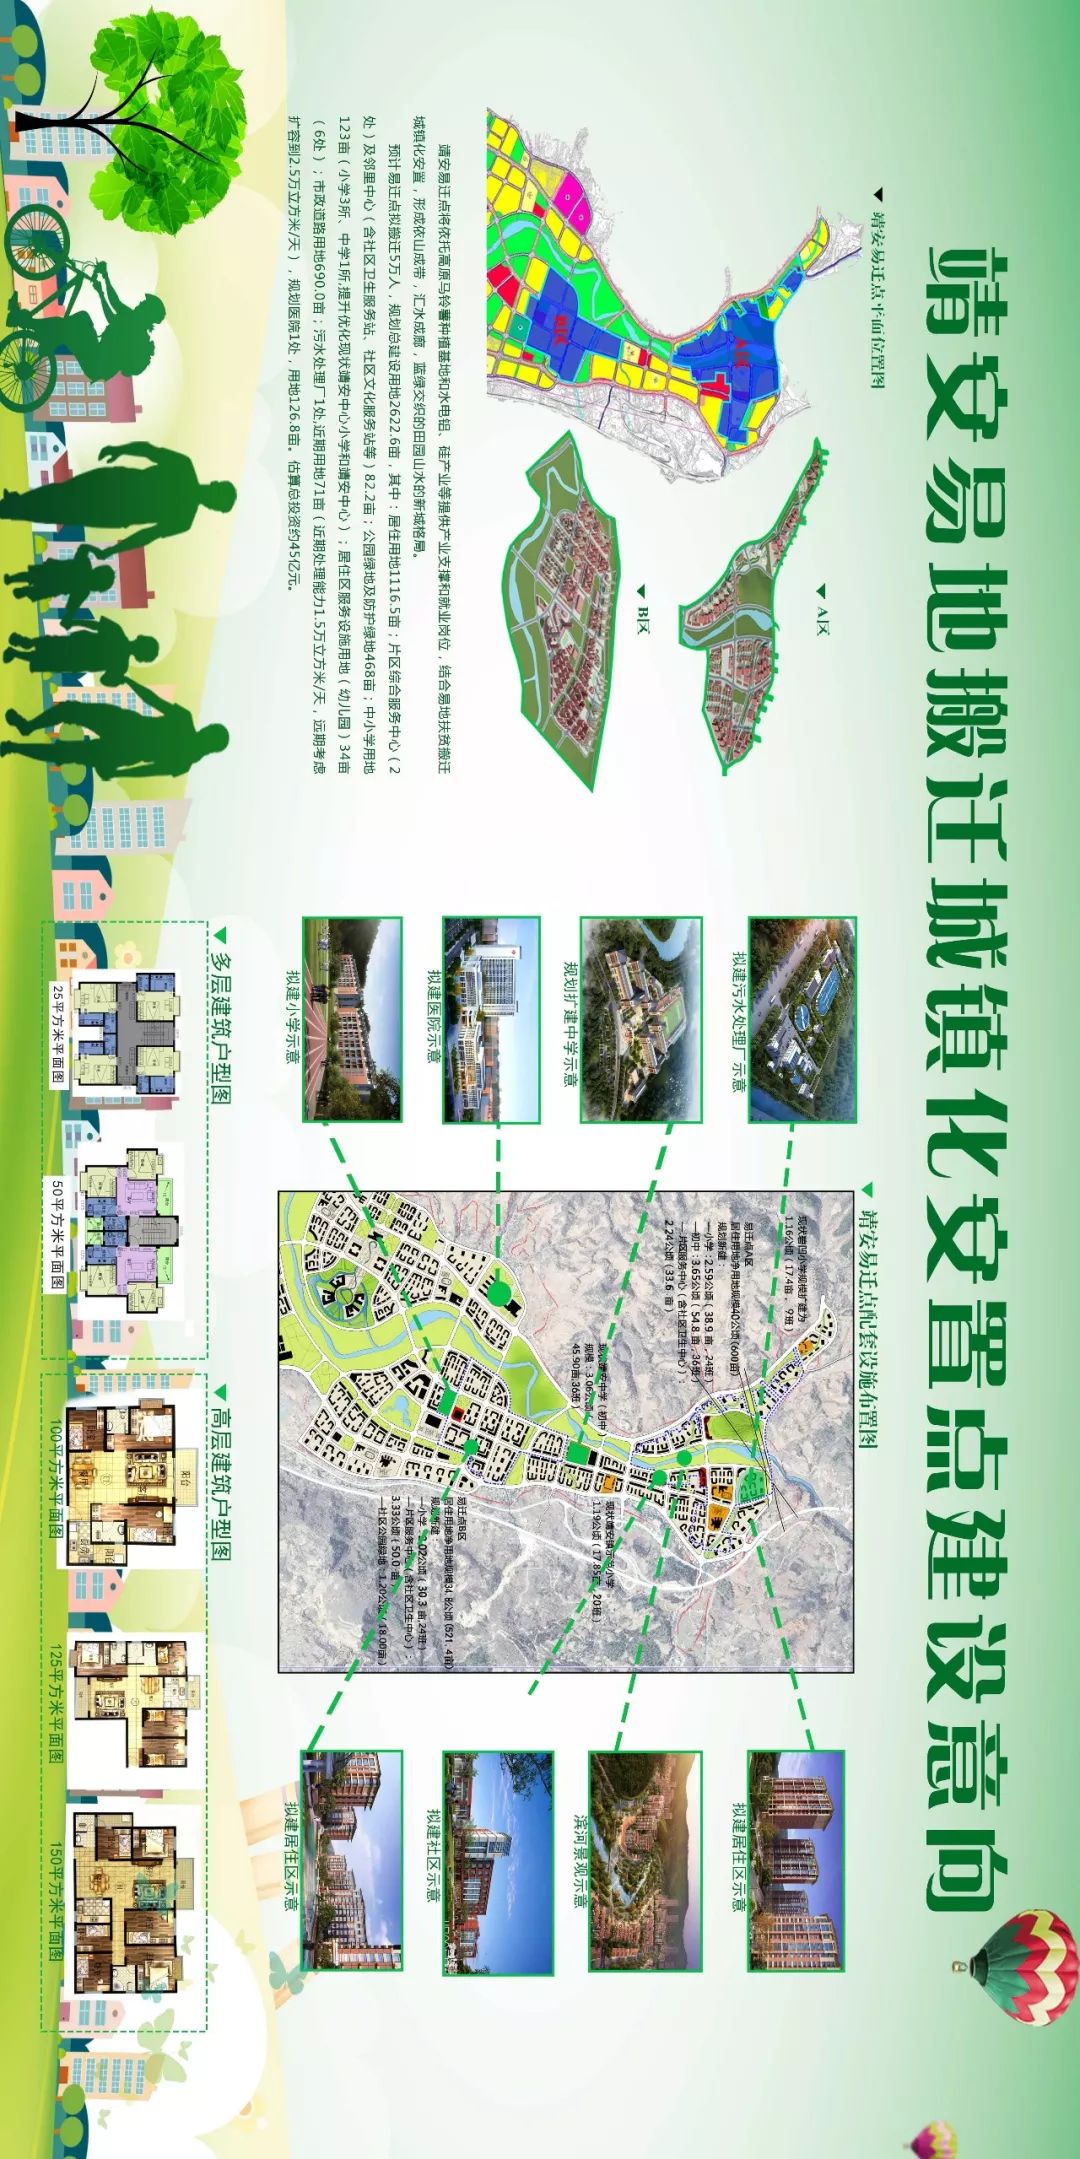 靖安县社区分布图图片